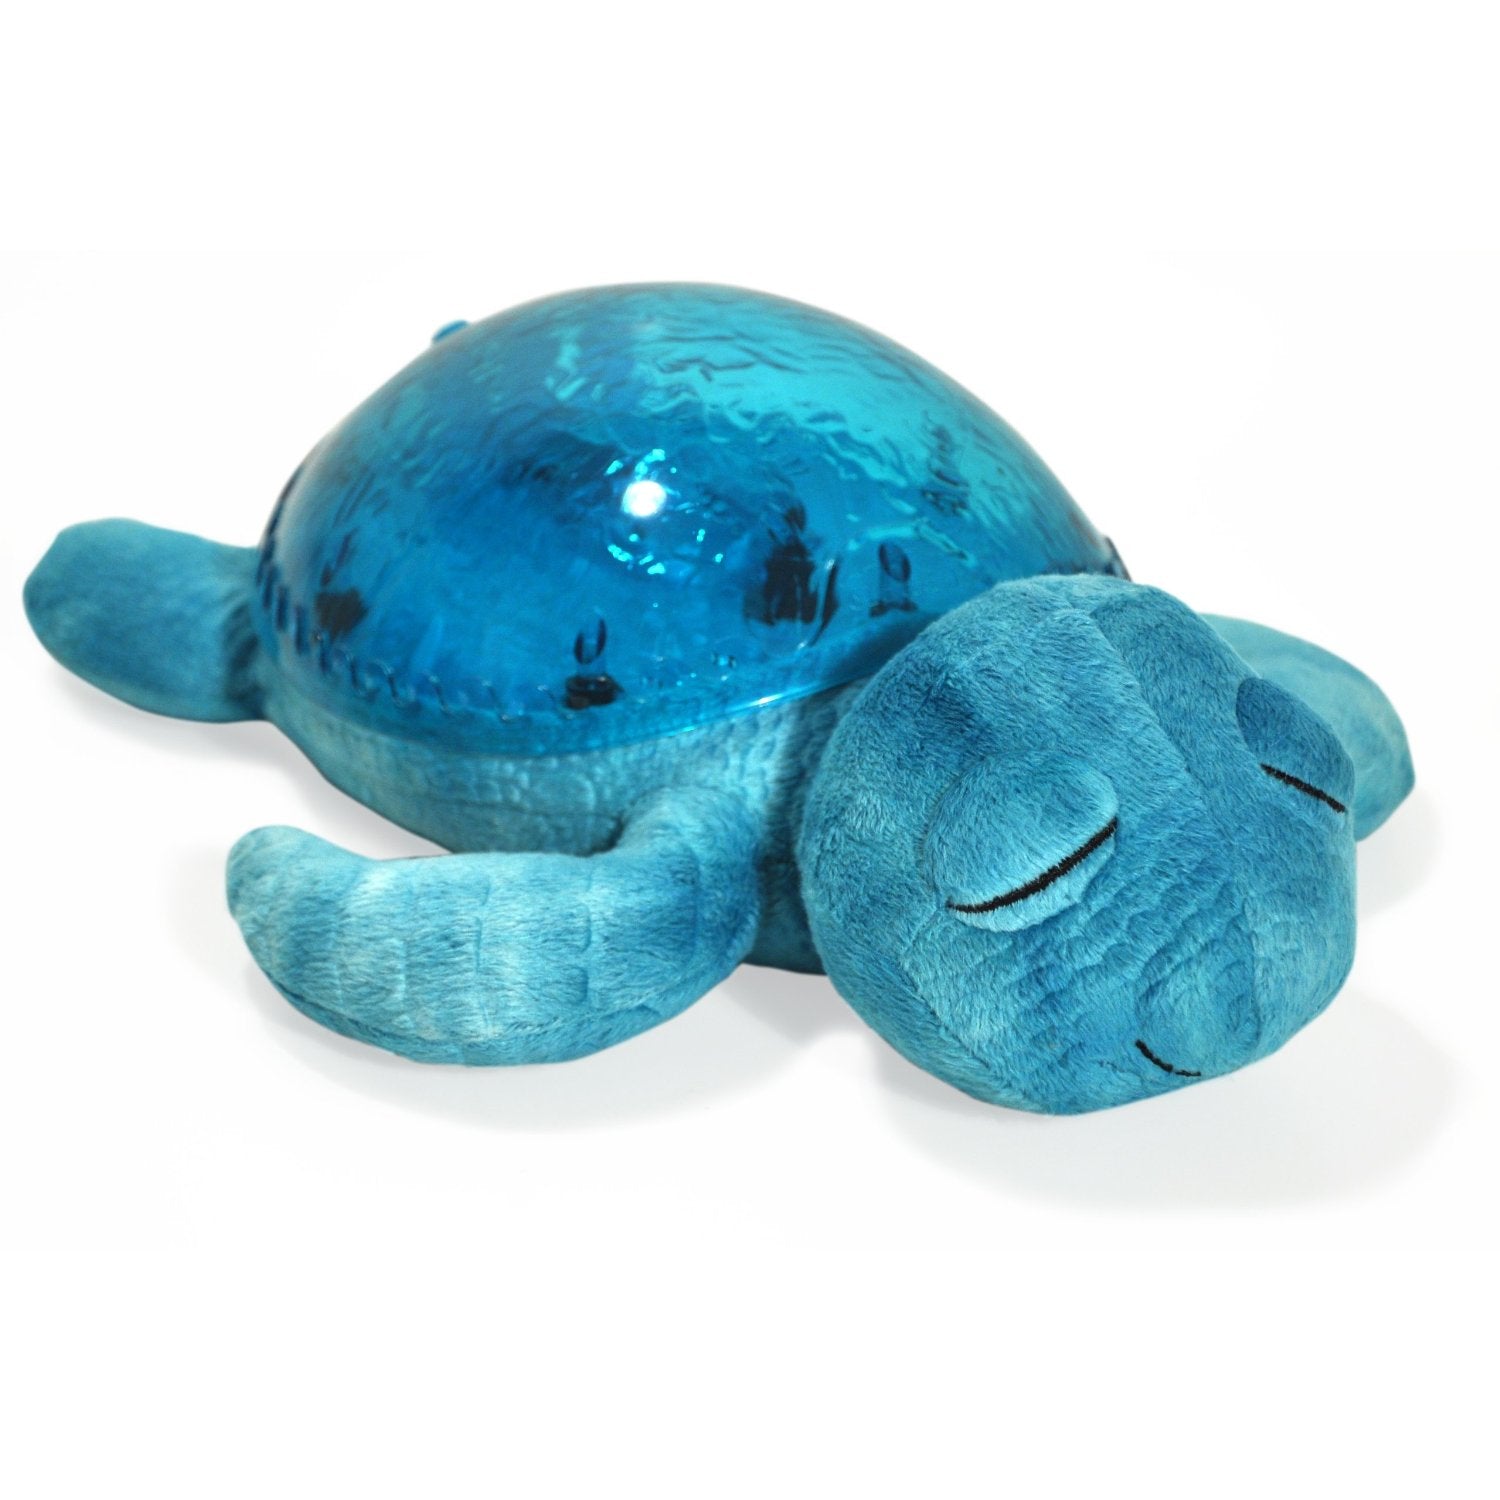 Tranquil Turtle aqua